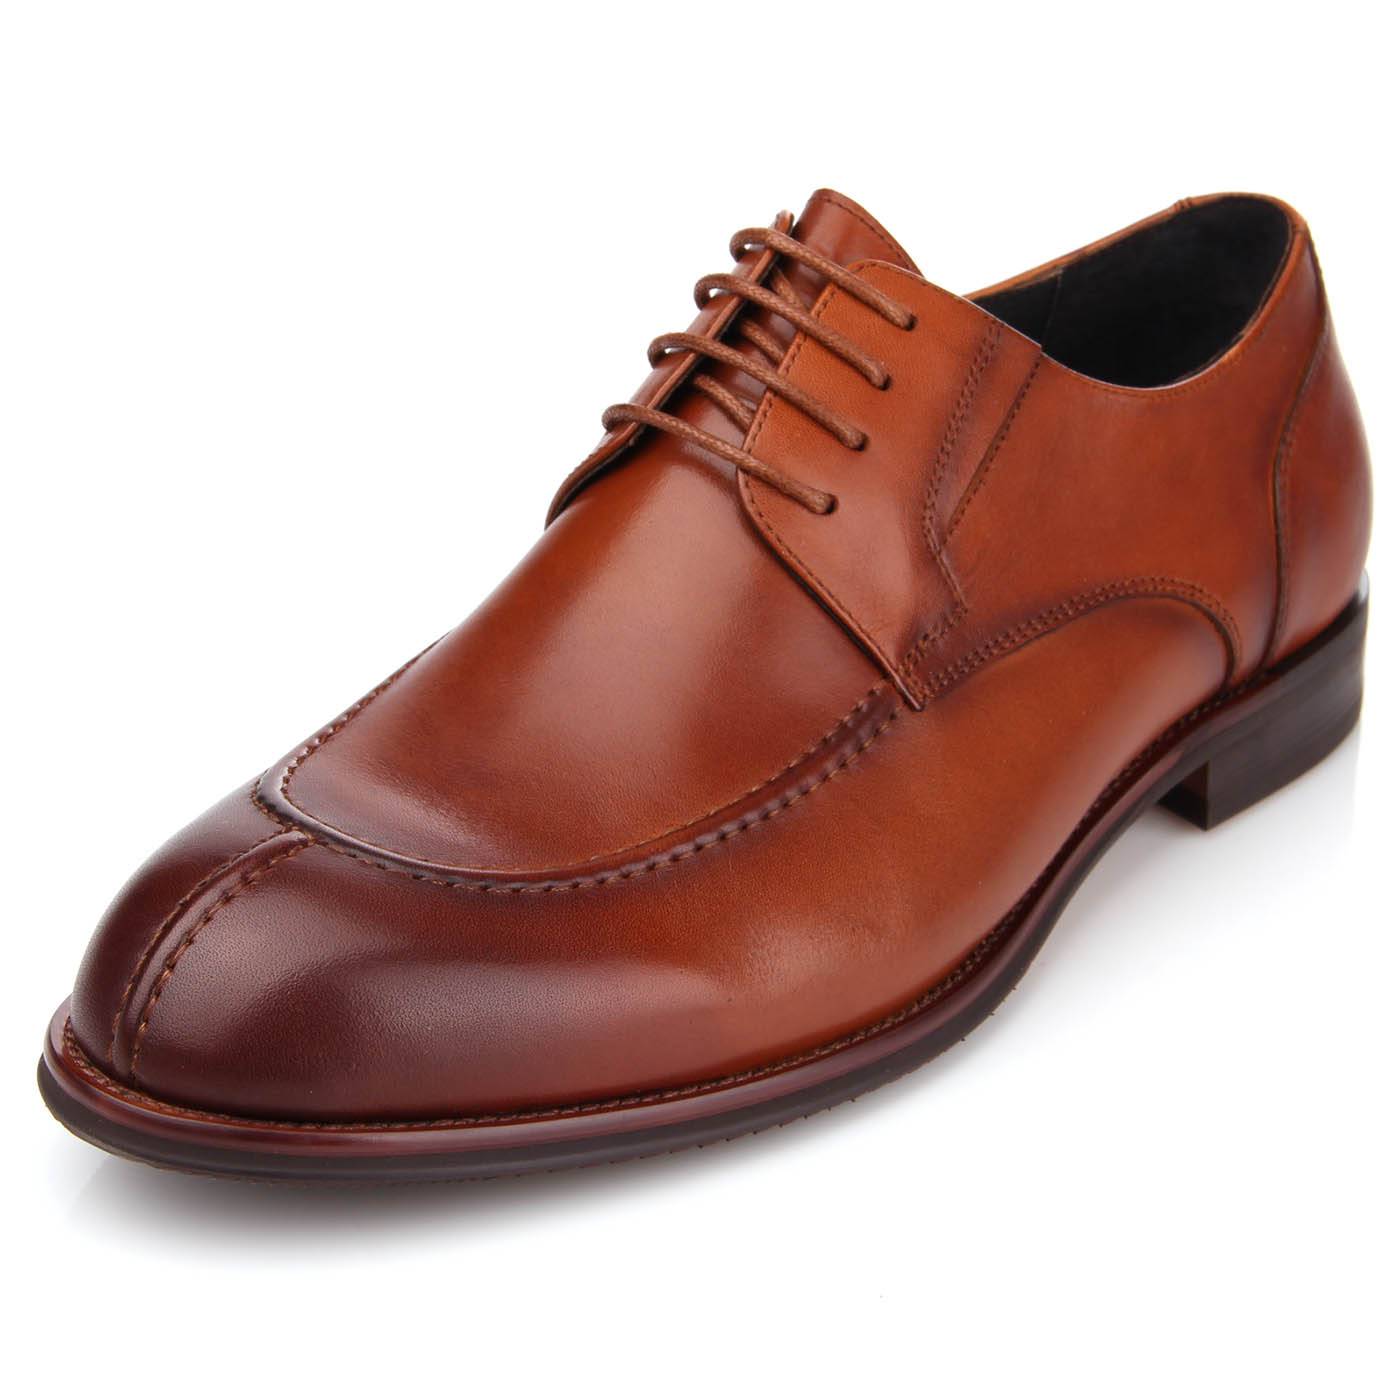 Купить коричневые ботинки мужские. Мужские туфли коричневые белвест 2016. Туфли мужские 526021/1 натуральная кожа, цвет: коричневый -. Barclay мужские туфли.